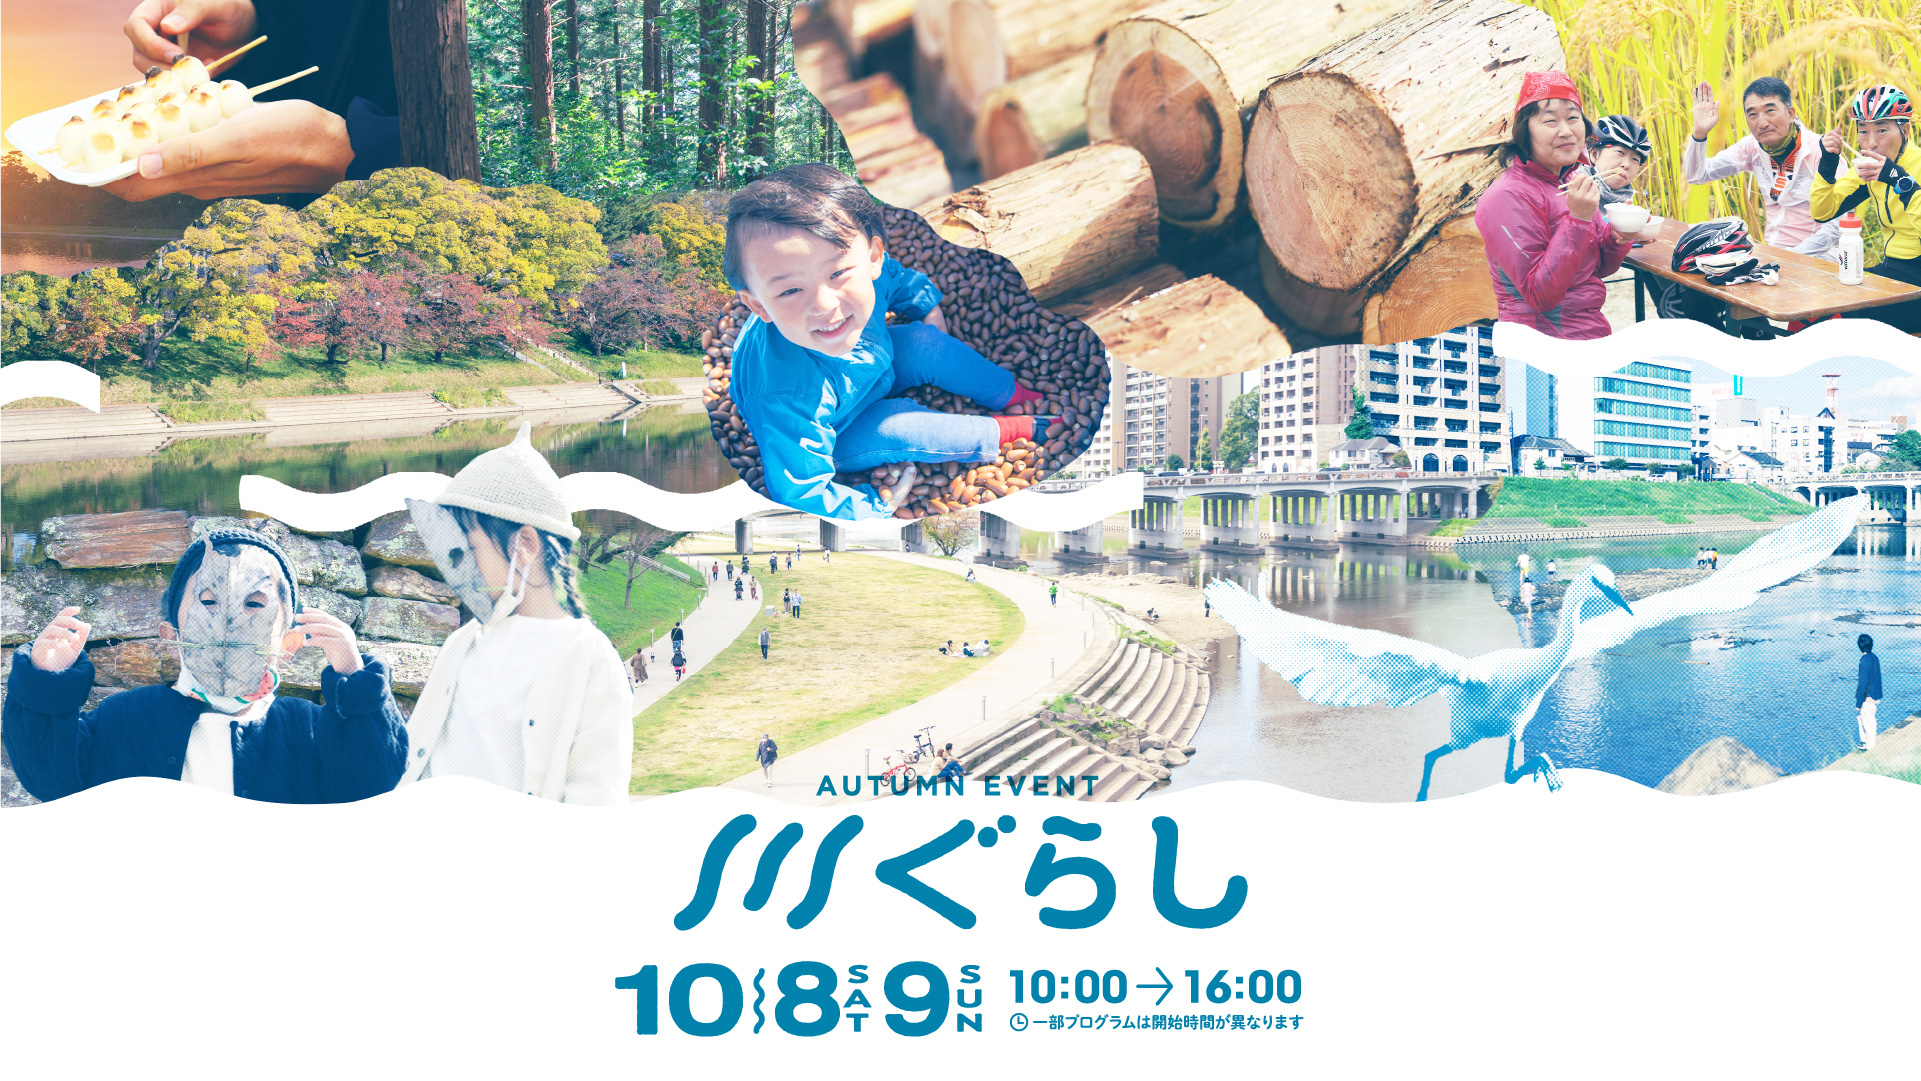 2022 AUTUMN EVENT 川ぐらし 10月8日（土）—10月9日（日） 10:00-16:00